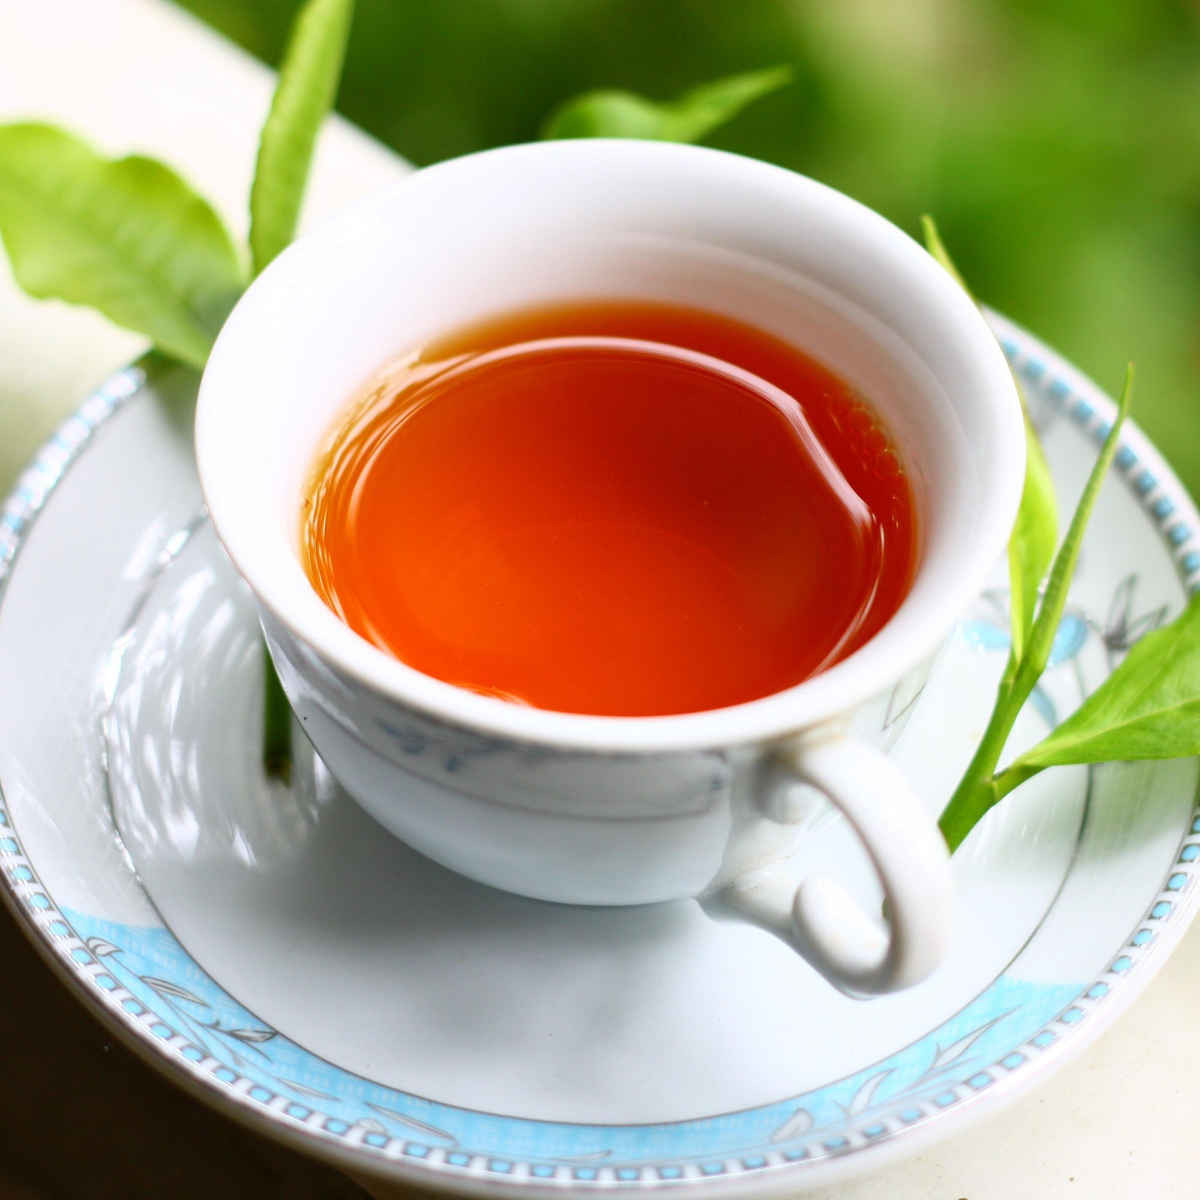 Hồng trà và lợi ích tuyệt vời với sức khỏe, ai không uống thì thật phí! - Ảnh 5.